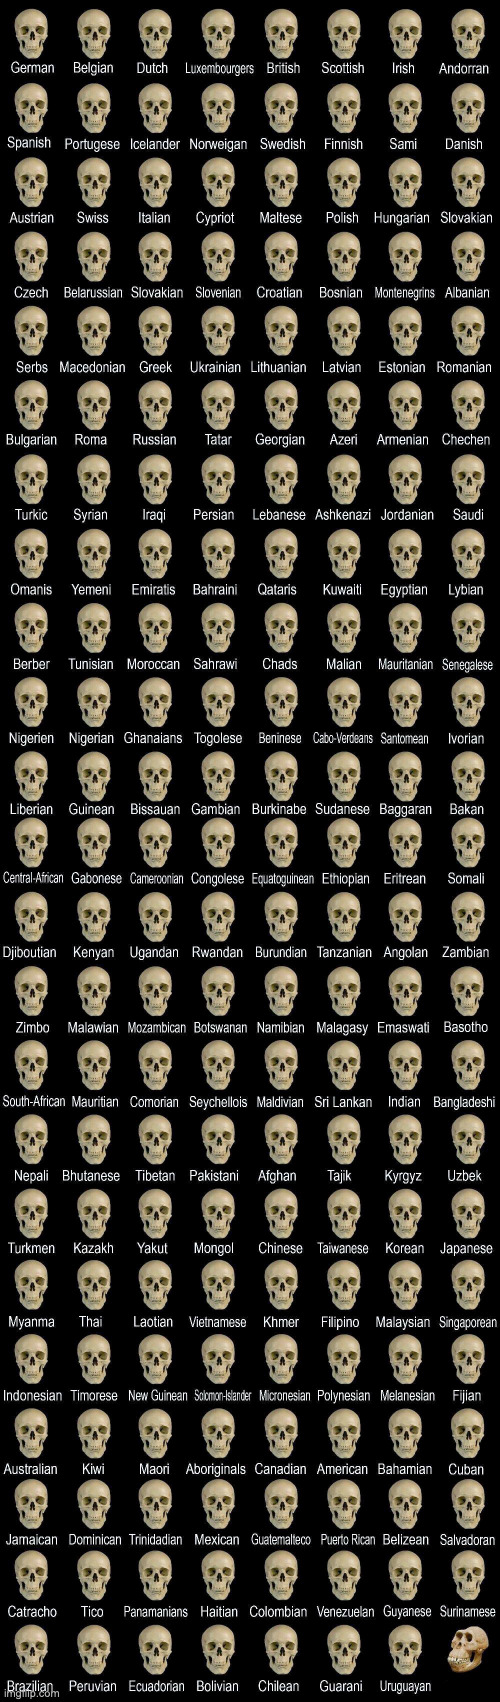 High Quality Deformed skull Blank Meme Template